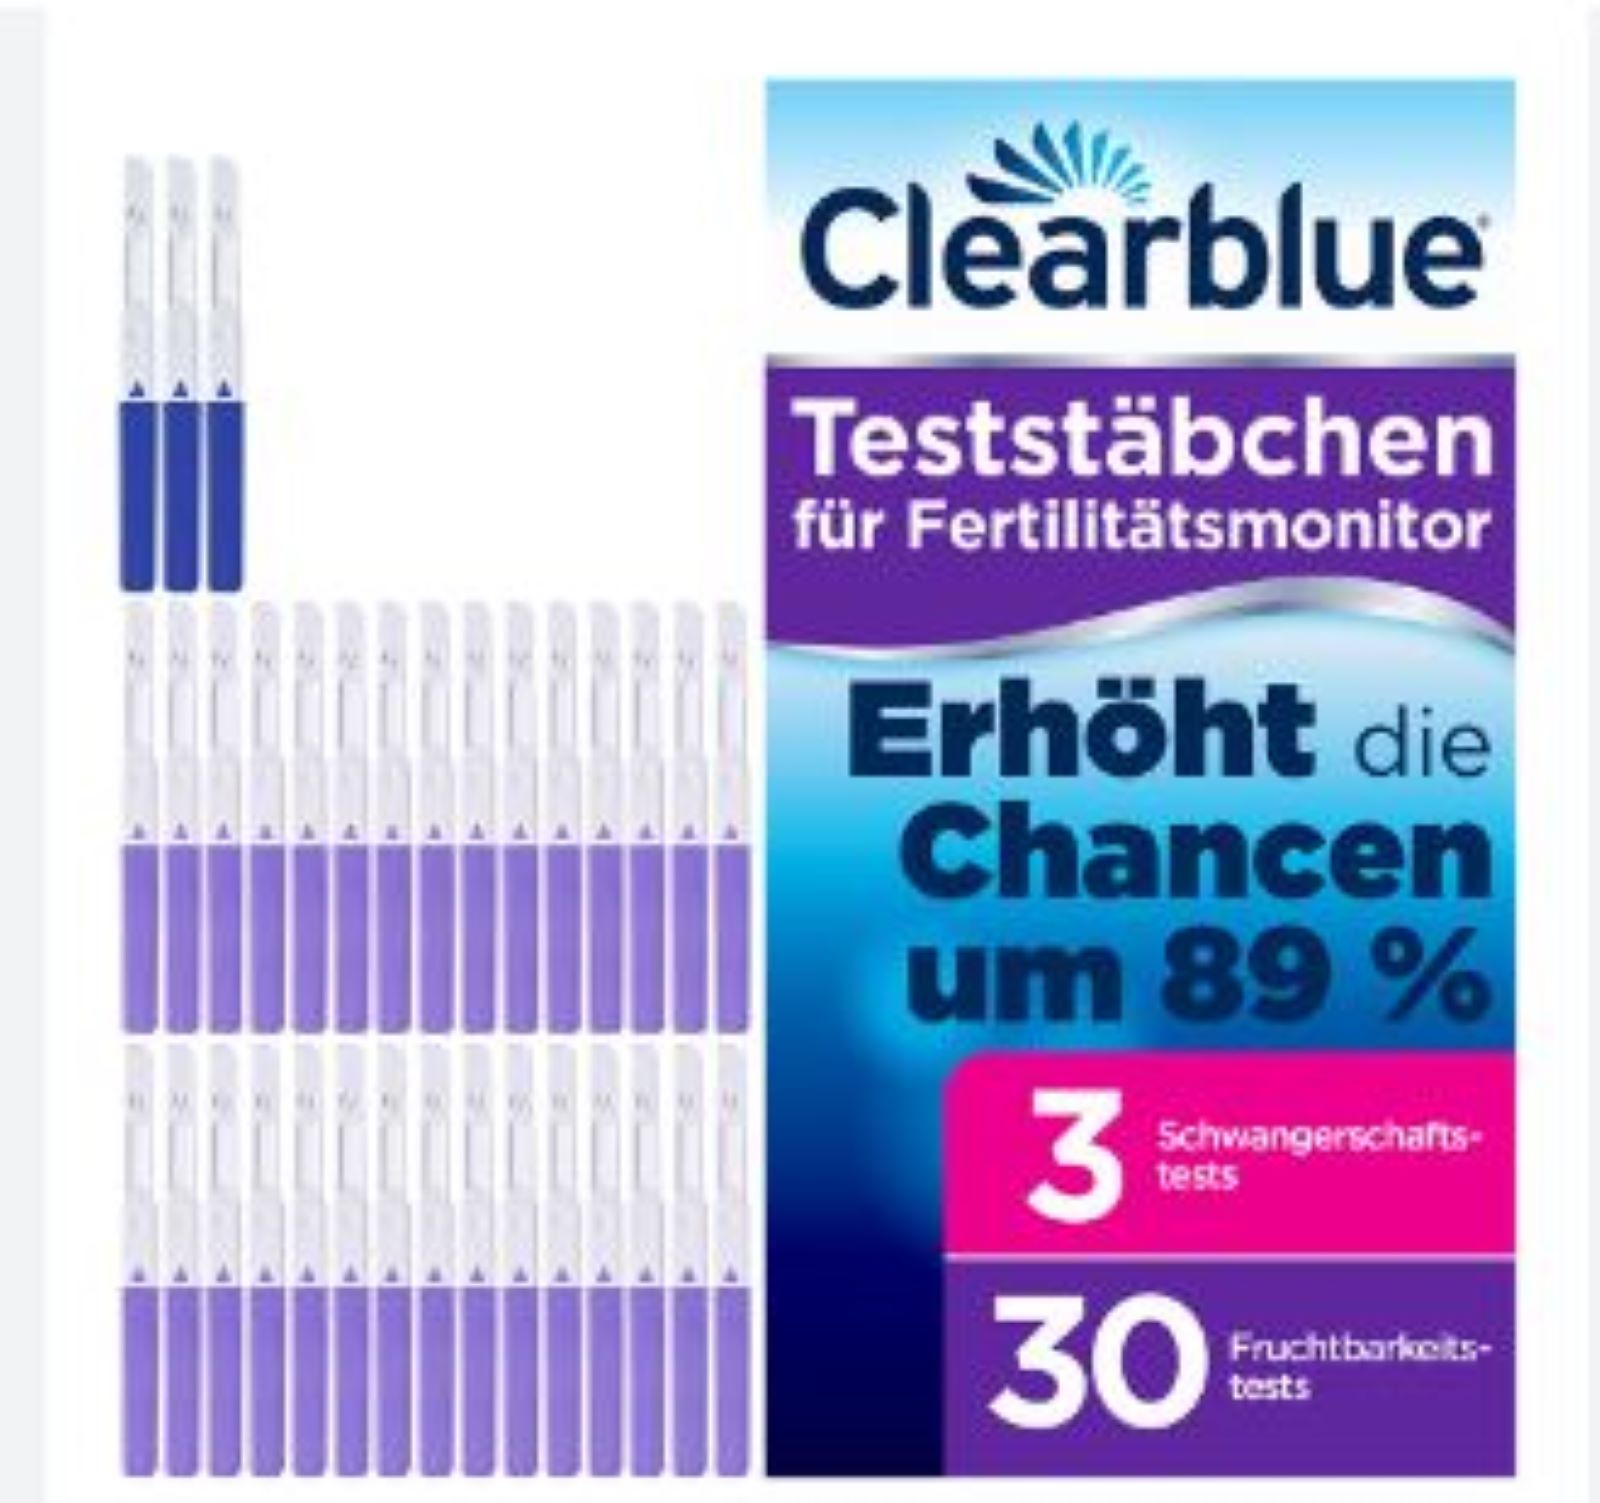 Clearblue Fertilitätsmonitor Advanced Teststäbchen 30+3